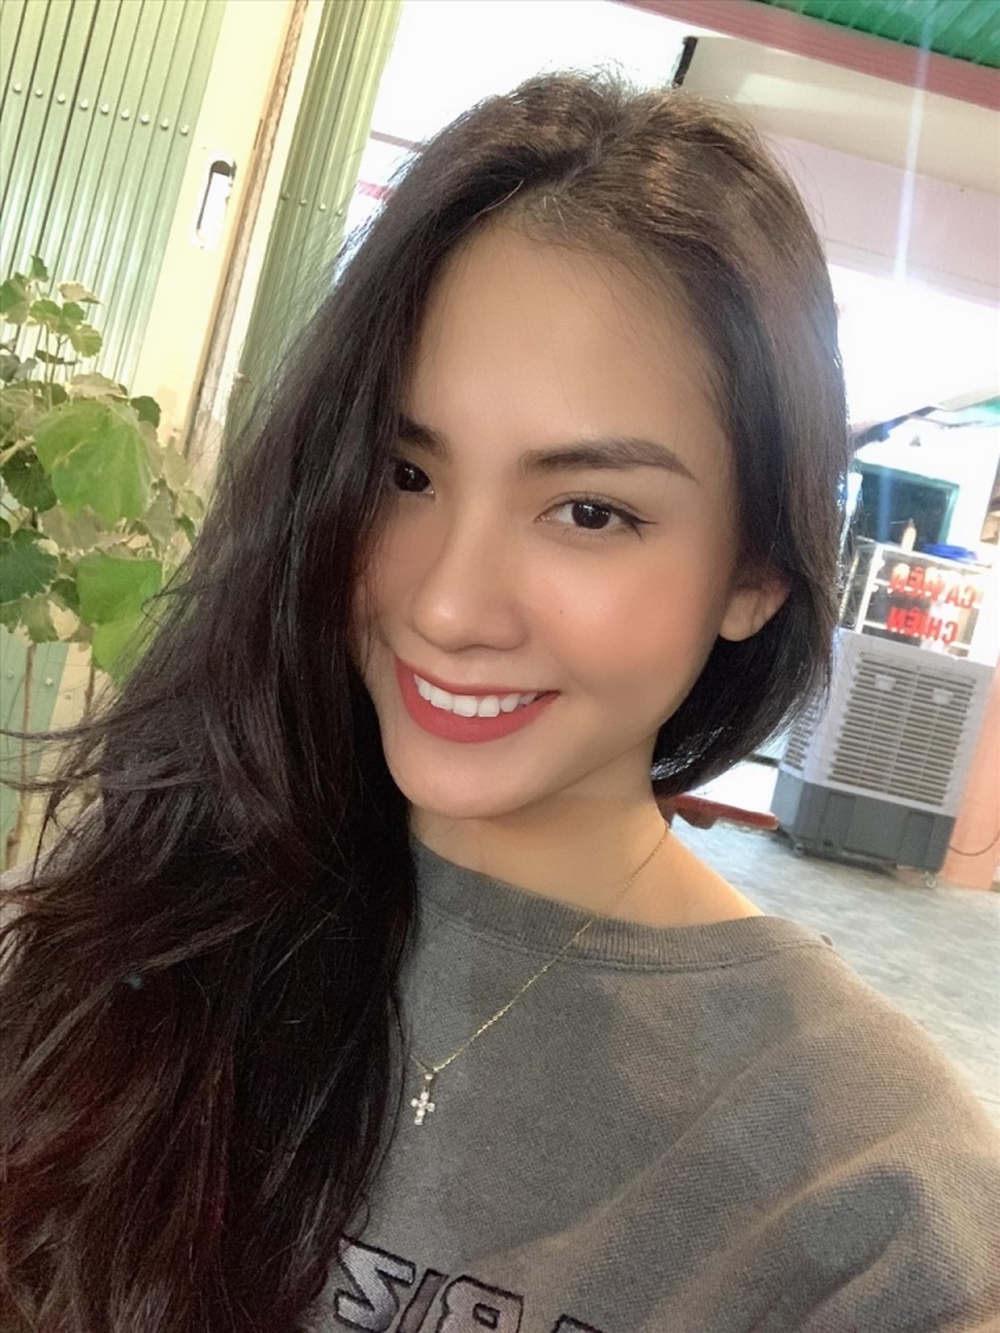 Sắc vóc cùng học vấn đáng nể của tân Hoa hậu Thế giới Việt Nam 2022 - ảnh 11